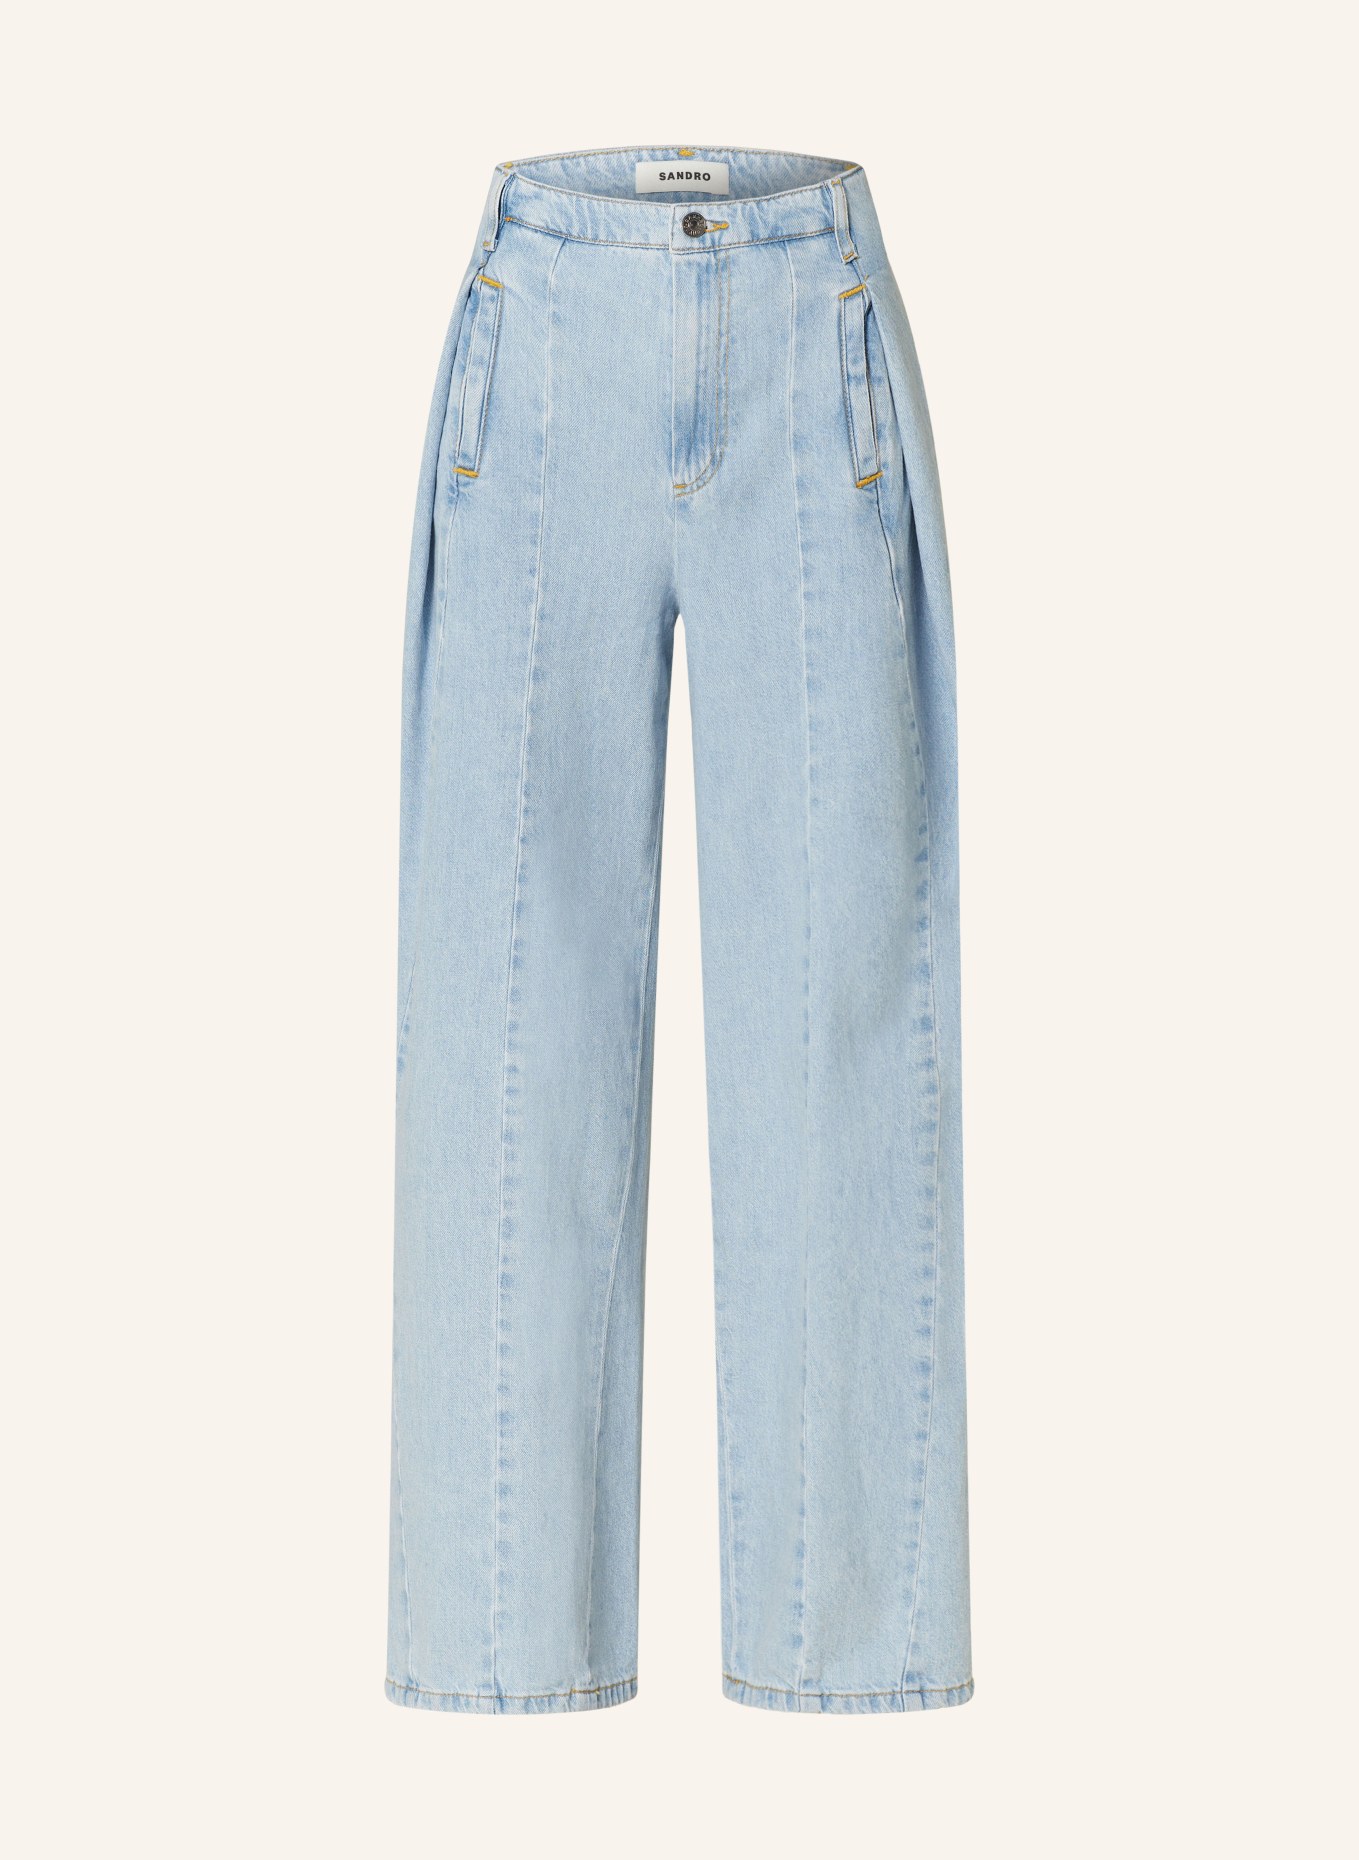 SANDRO Flared Jeans, Farbe: J002 LIGHT BU JEAN (Bild 1)